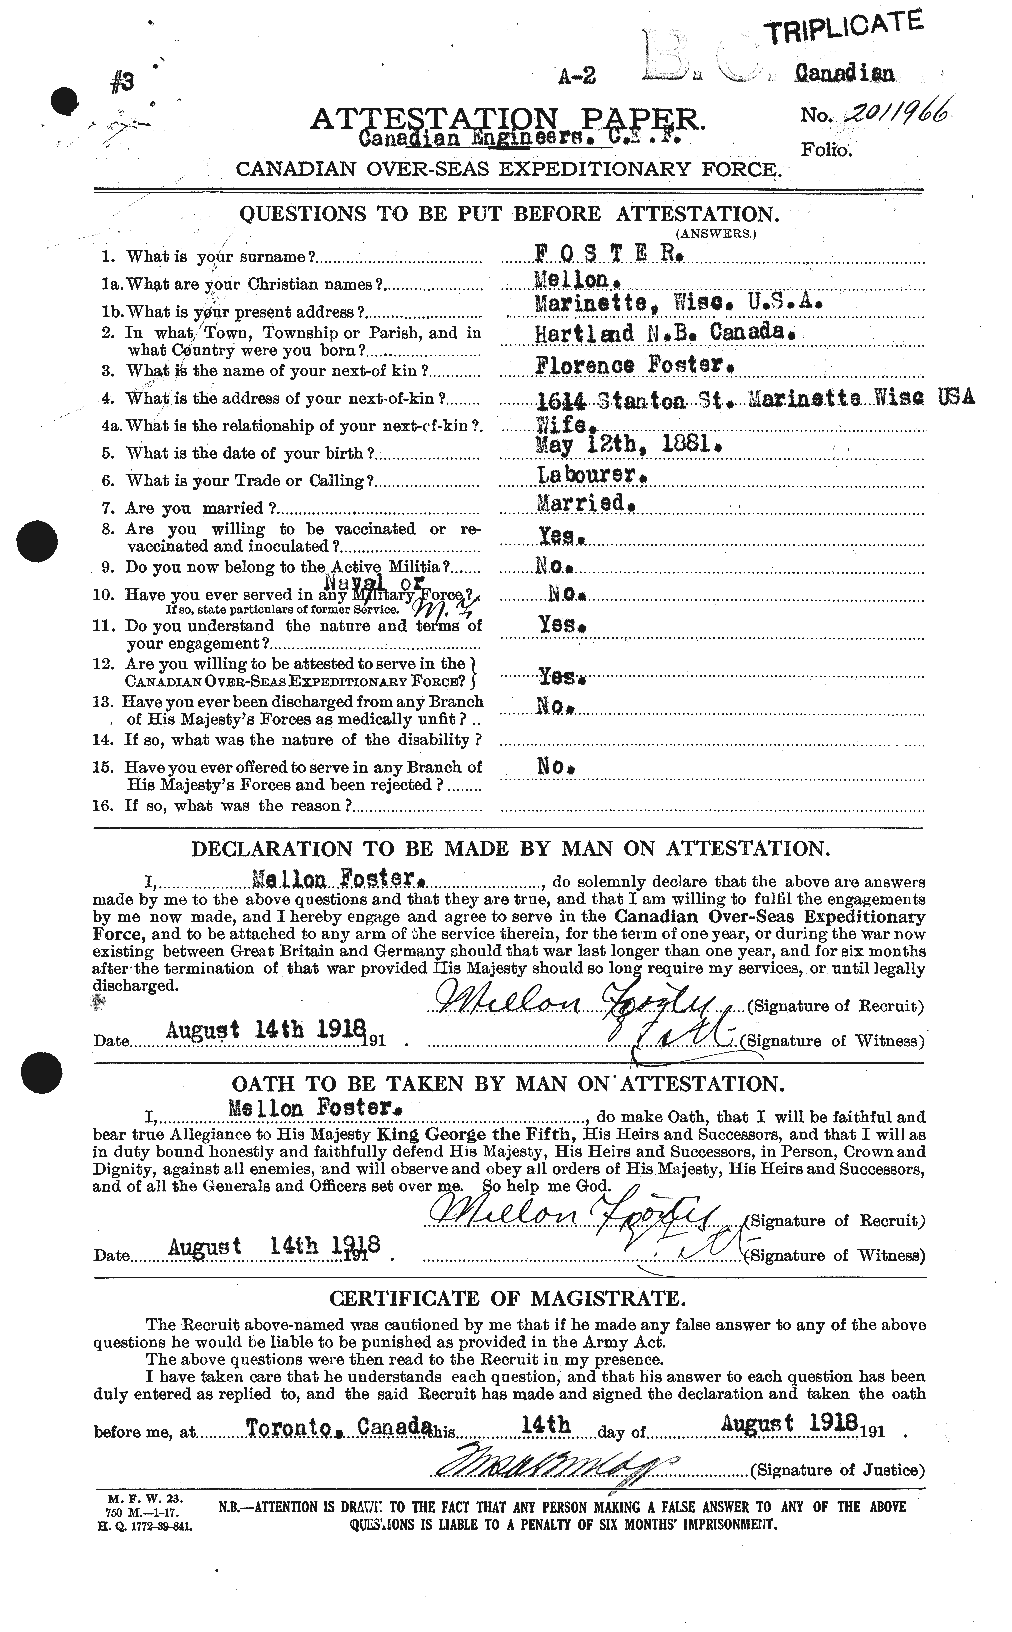 Dossiers du Personnel de la Première Guerre mondiale - CEC 333425a